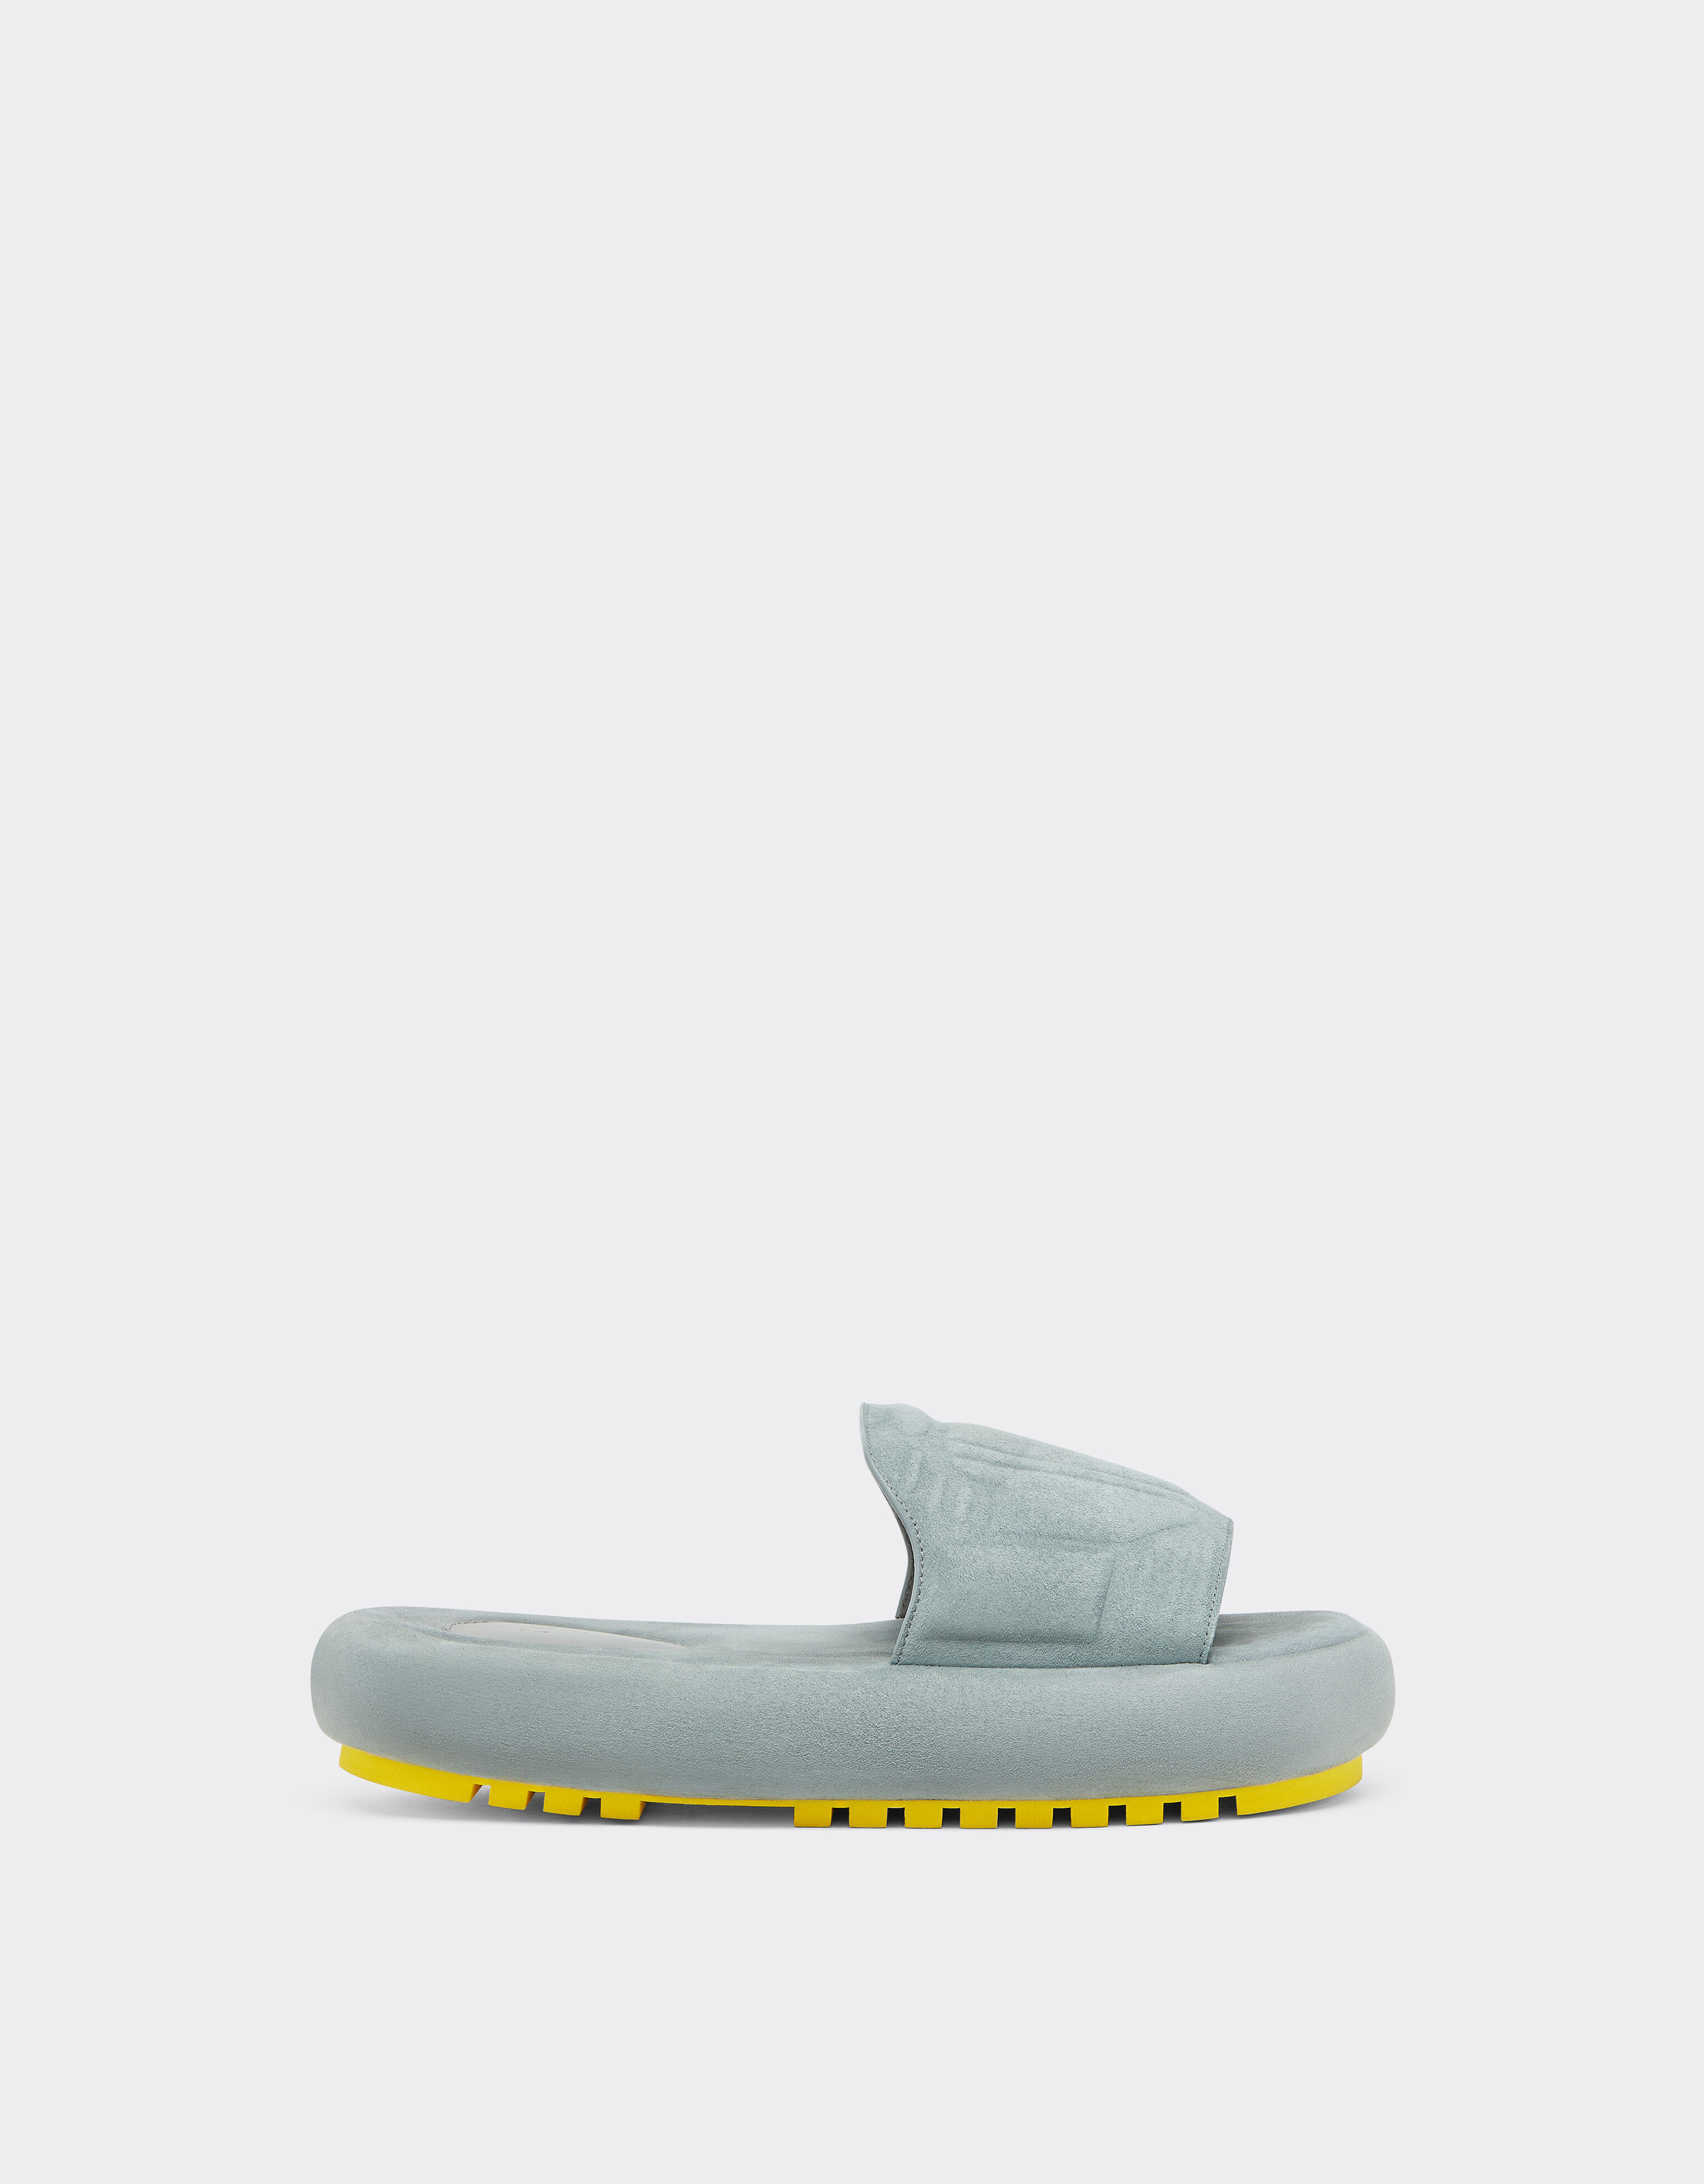 Ferrari Miami Collection slipper sandals in suede Silver 21272f